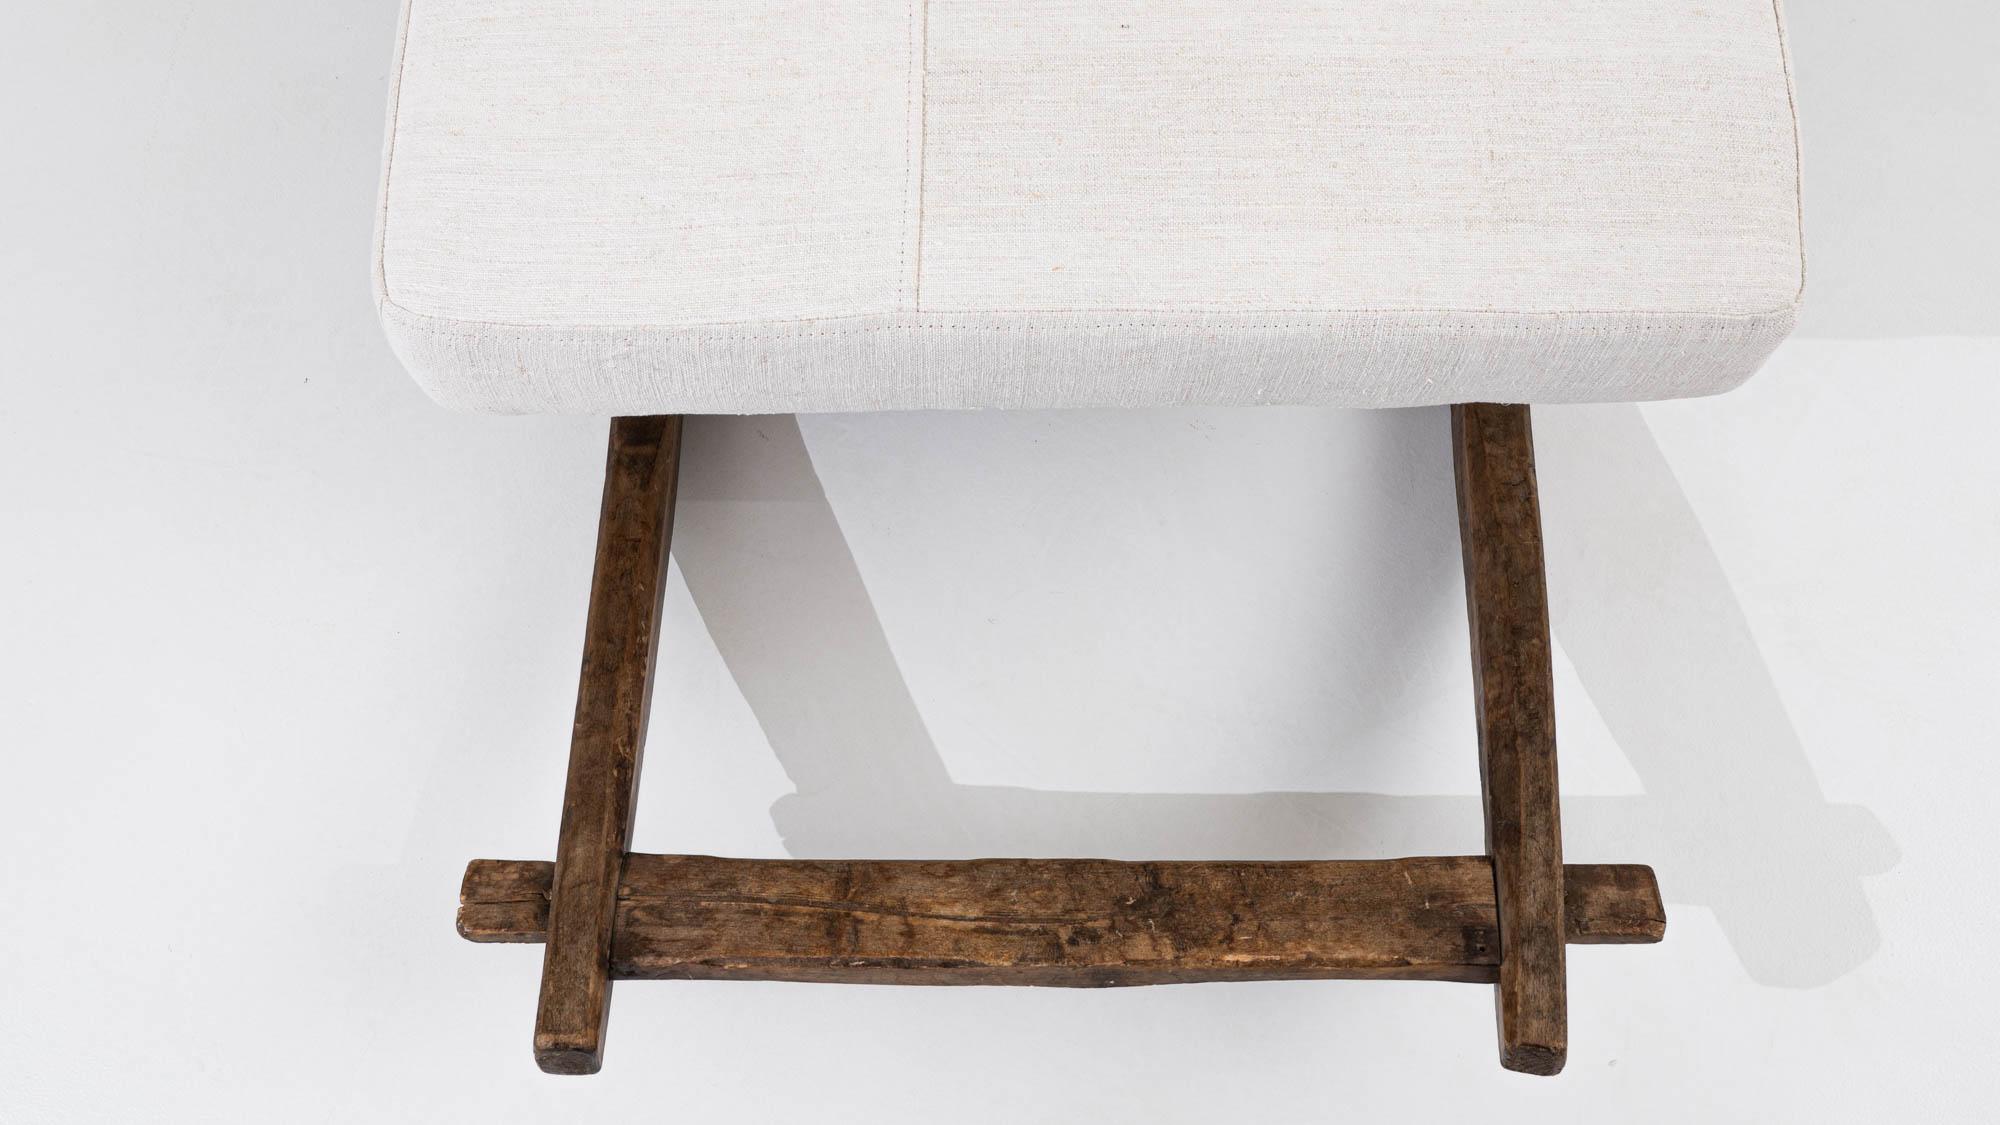 Unsere mitteleuropäische Holzbank aus dem 19. Jahrhundert ist ein zeitloses Stück, das Eleganz und antiken Charme nahtlos miteinander verbindet. Diese mit Präzision aus haltbarem Holz gefertigte Bank zeigt die exquisite Handwerkskunst einer